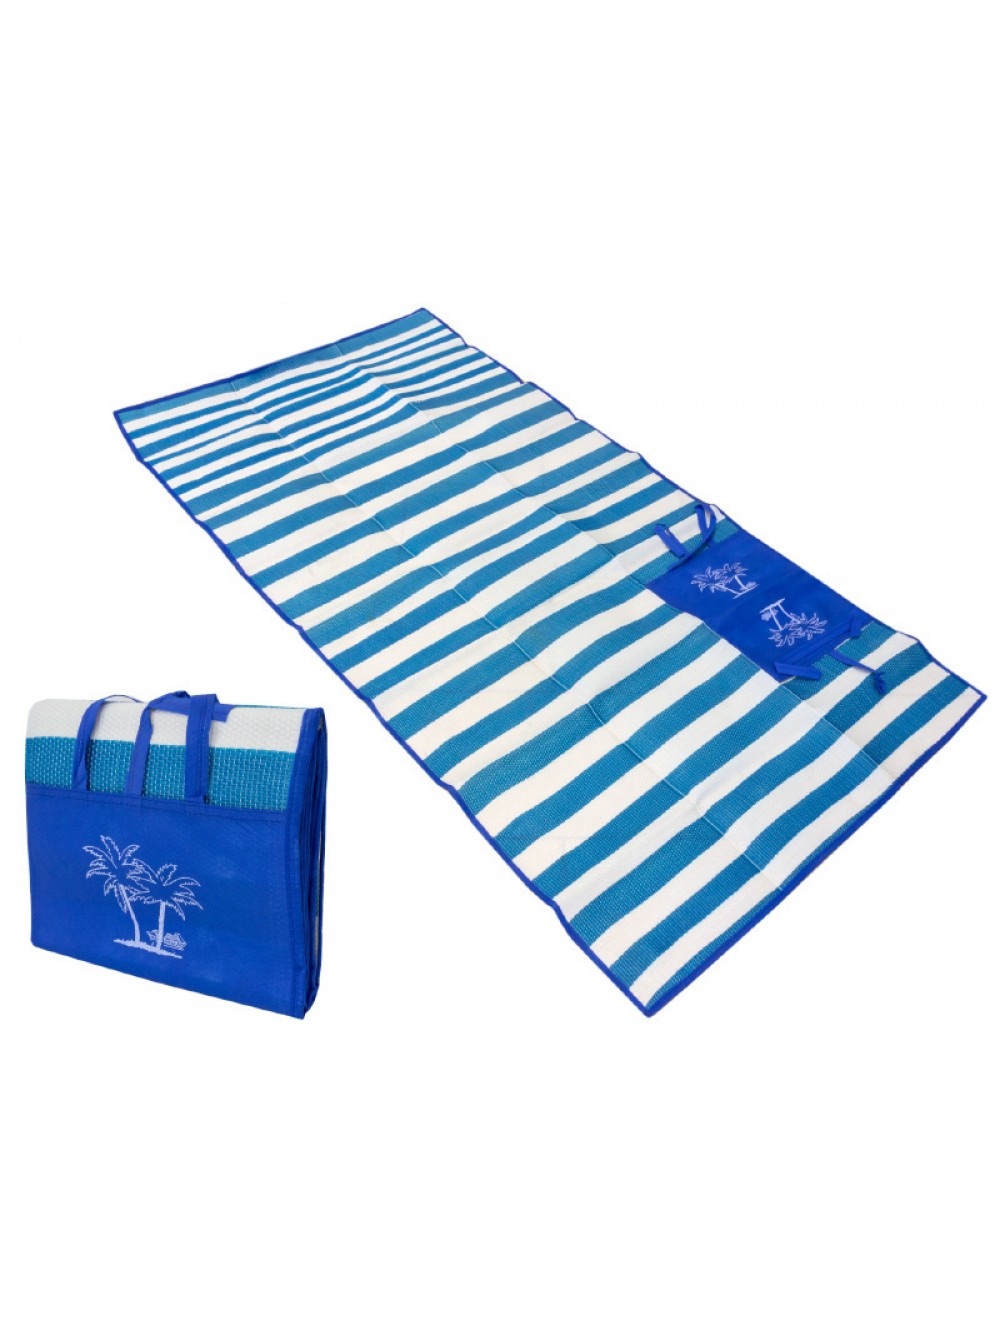 фото Коврик туристический Migliores Пляжный коврик с ручками для переноски, синий